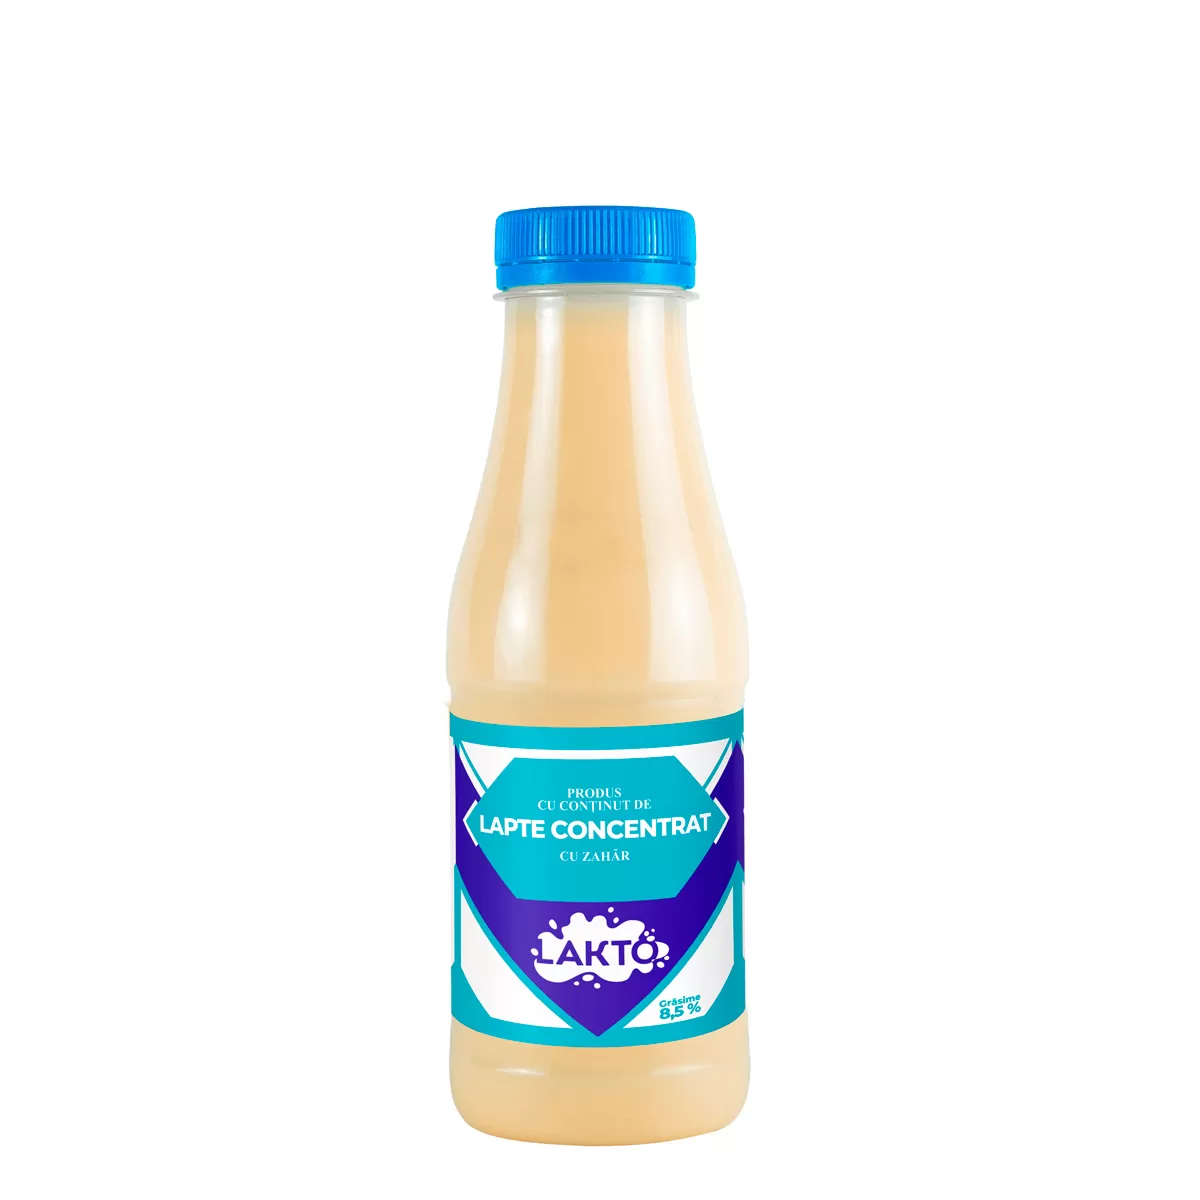 LAKTO Produs de lapte concentrat cu zahar 8.5% PET, 480g